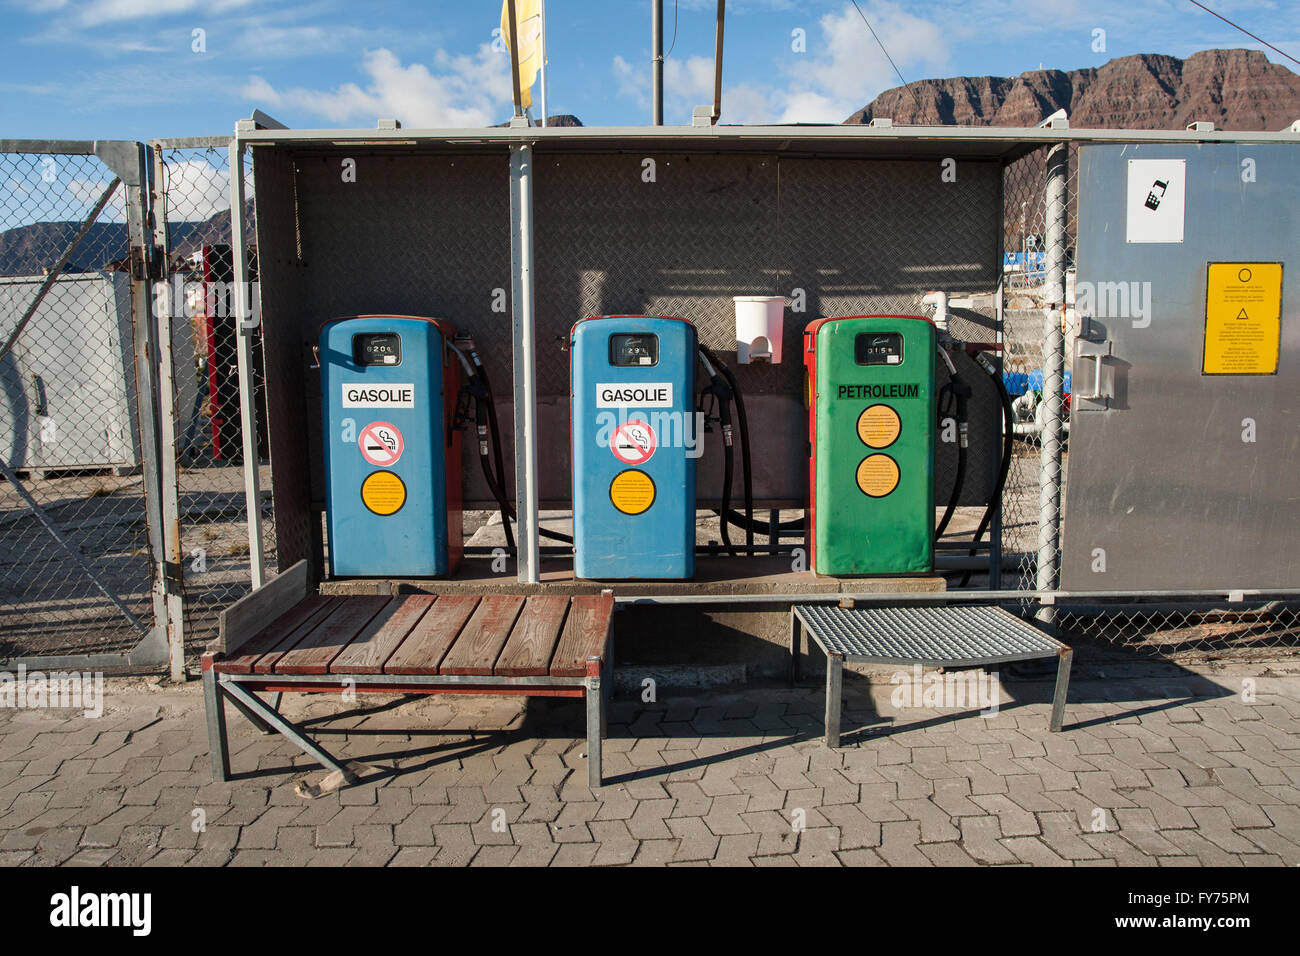 Car filling station, Qeqertarsuaq, Greenland Stock Photo